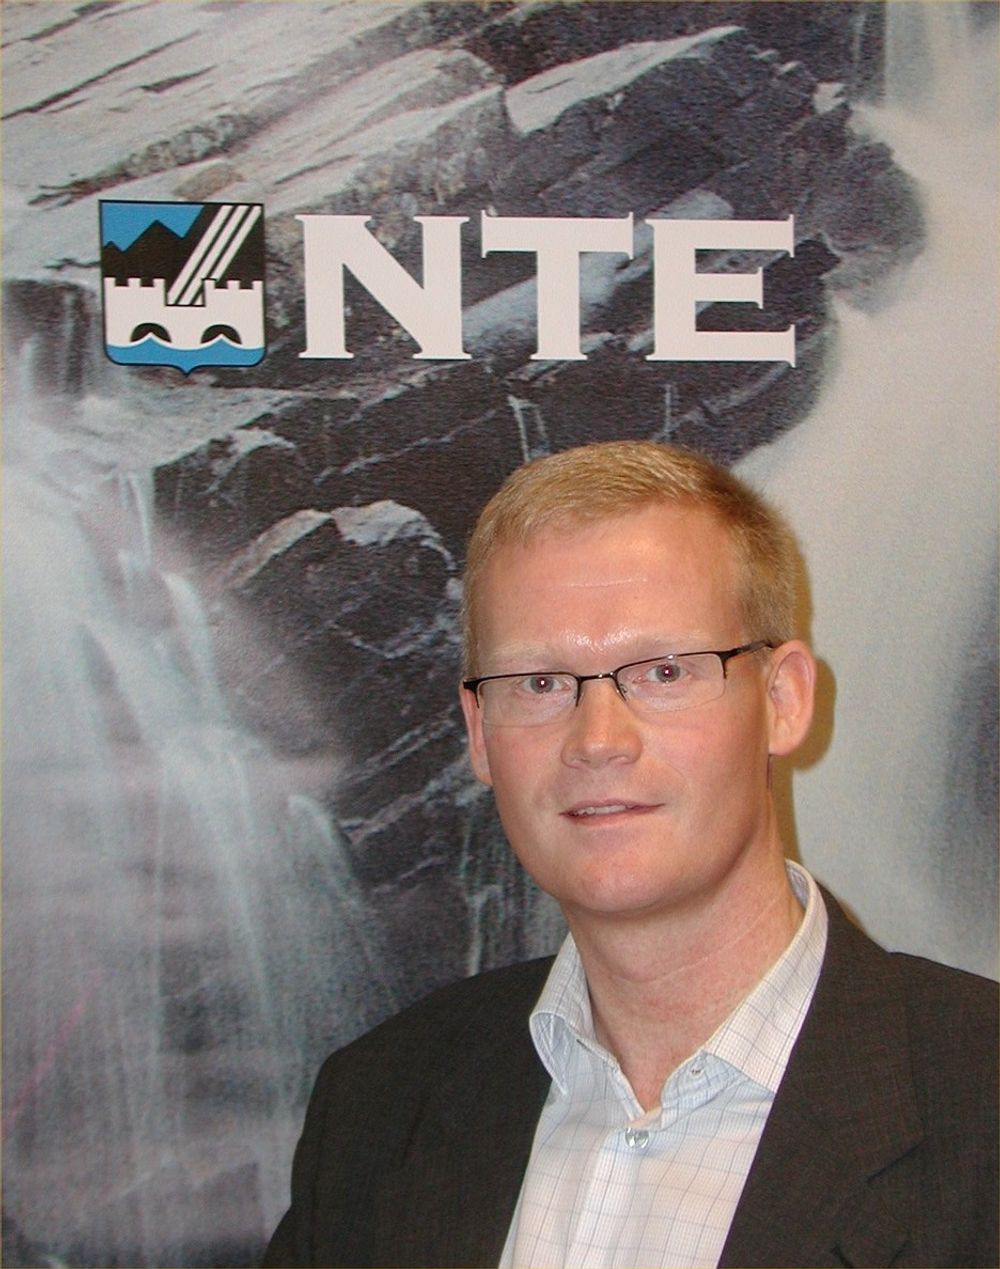 LØFTEBRUDD: Divisjonsdirektør Kenneth Brandsås i NTE mener regjeringen ikke har holdt det den lovet.